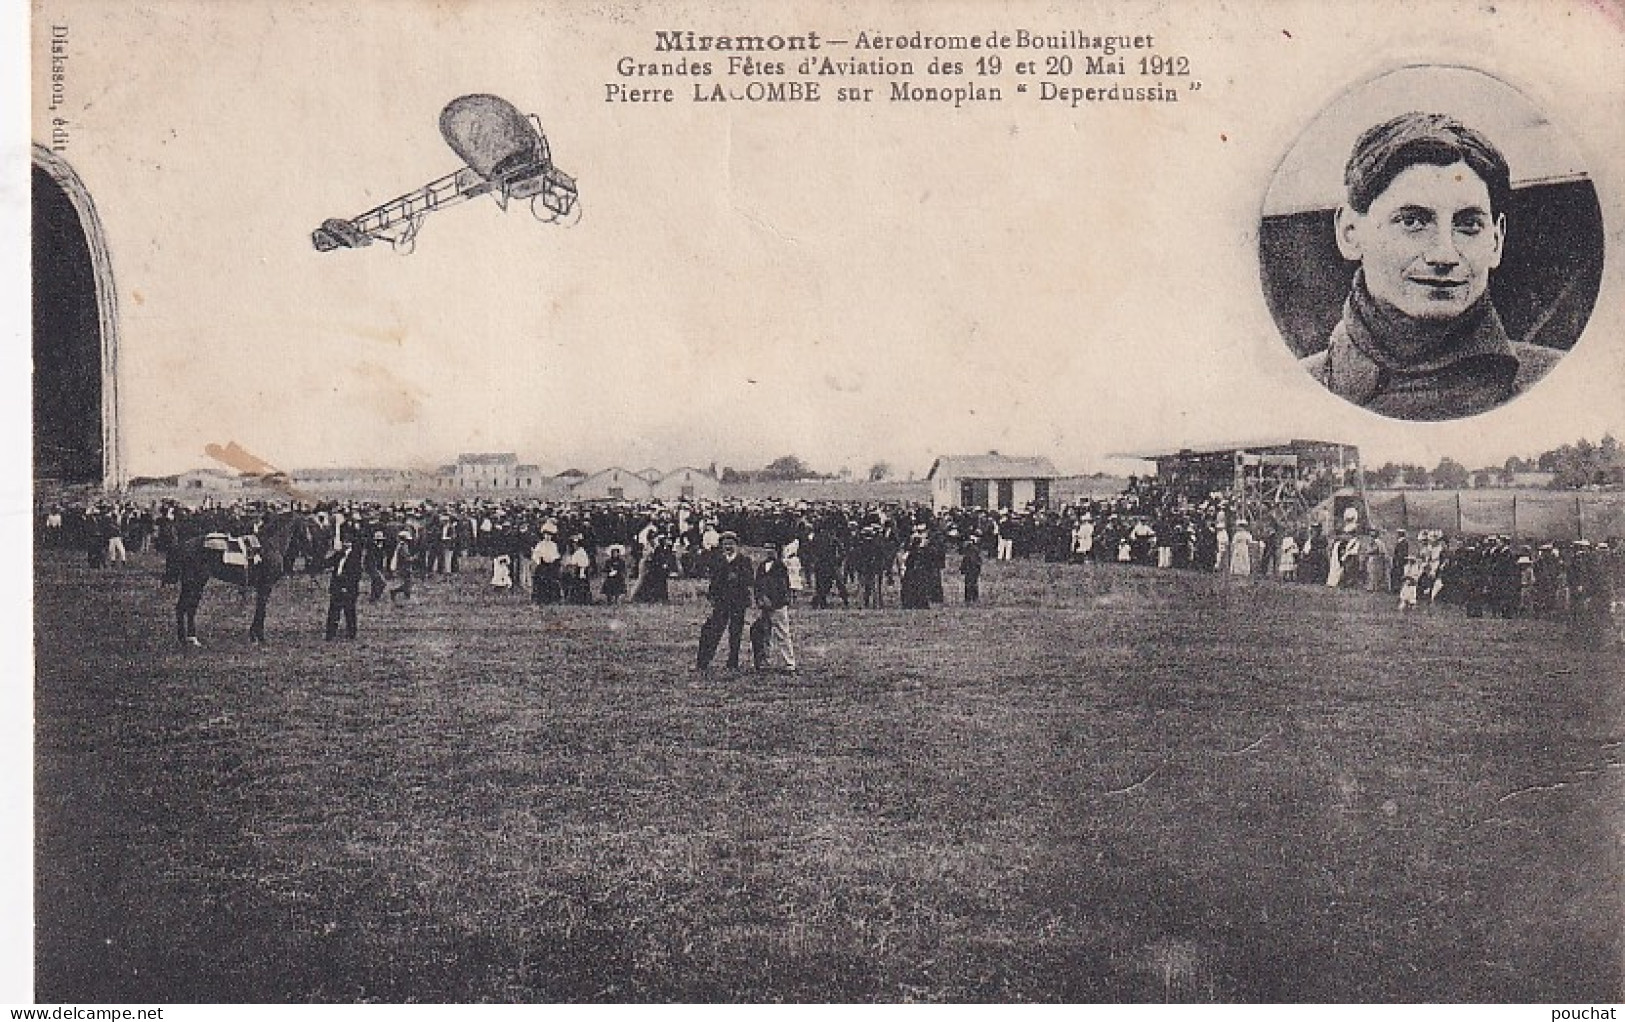 XXX Nw-(47) MIRAMONT - AERODROME DE BOUILHAGUET - FETES D'AVIATION MAI 1912 - PIERRE LACOMBE SUR MONOPLAN DEPERDUSSIN - Aviadores